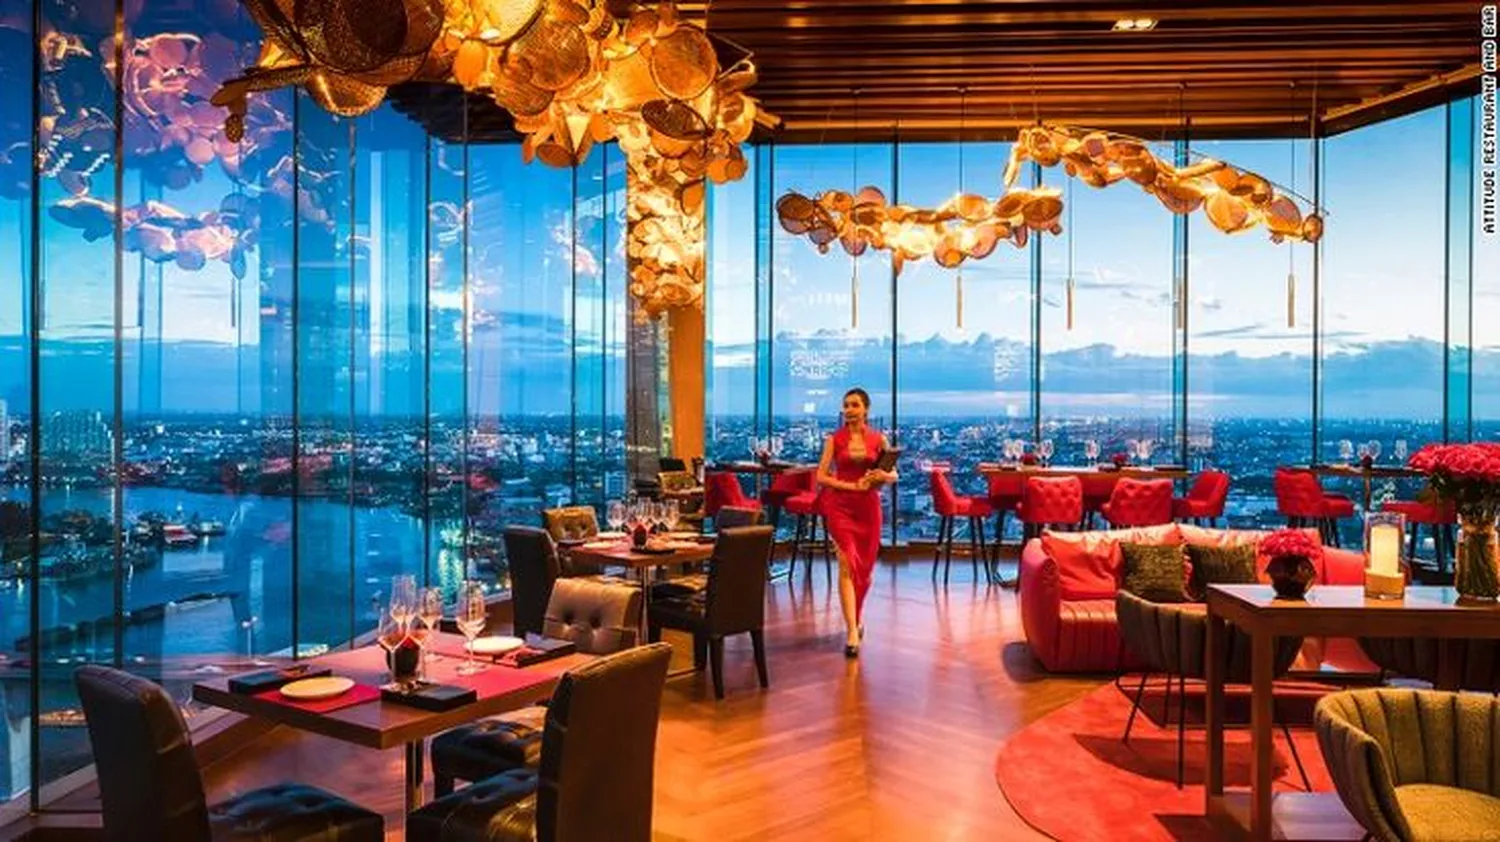 The world restaurant Bangkok